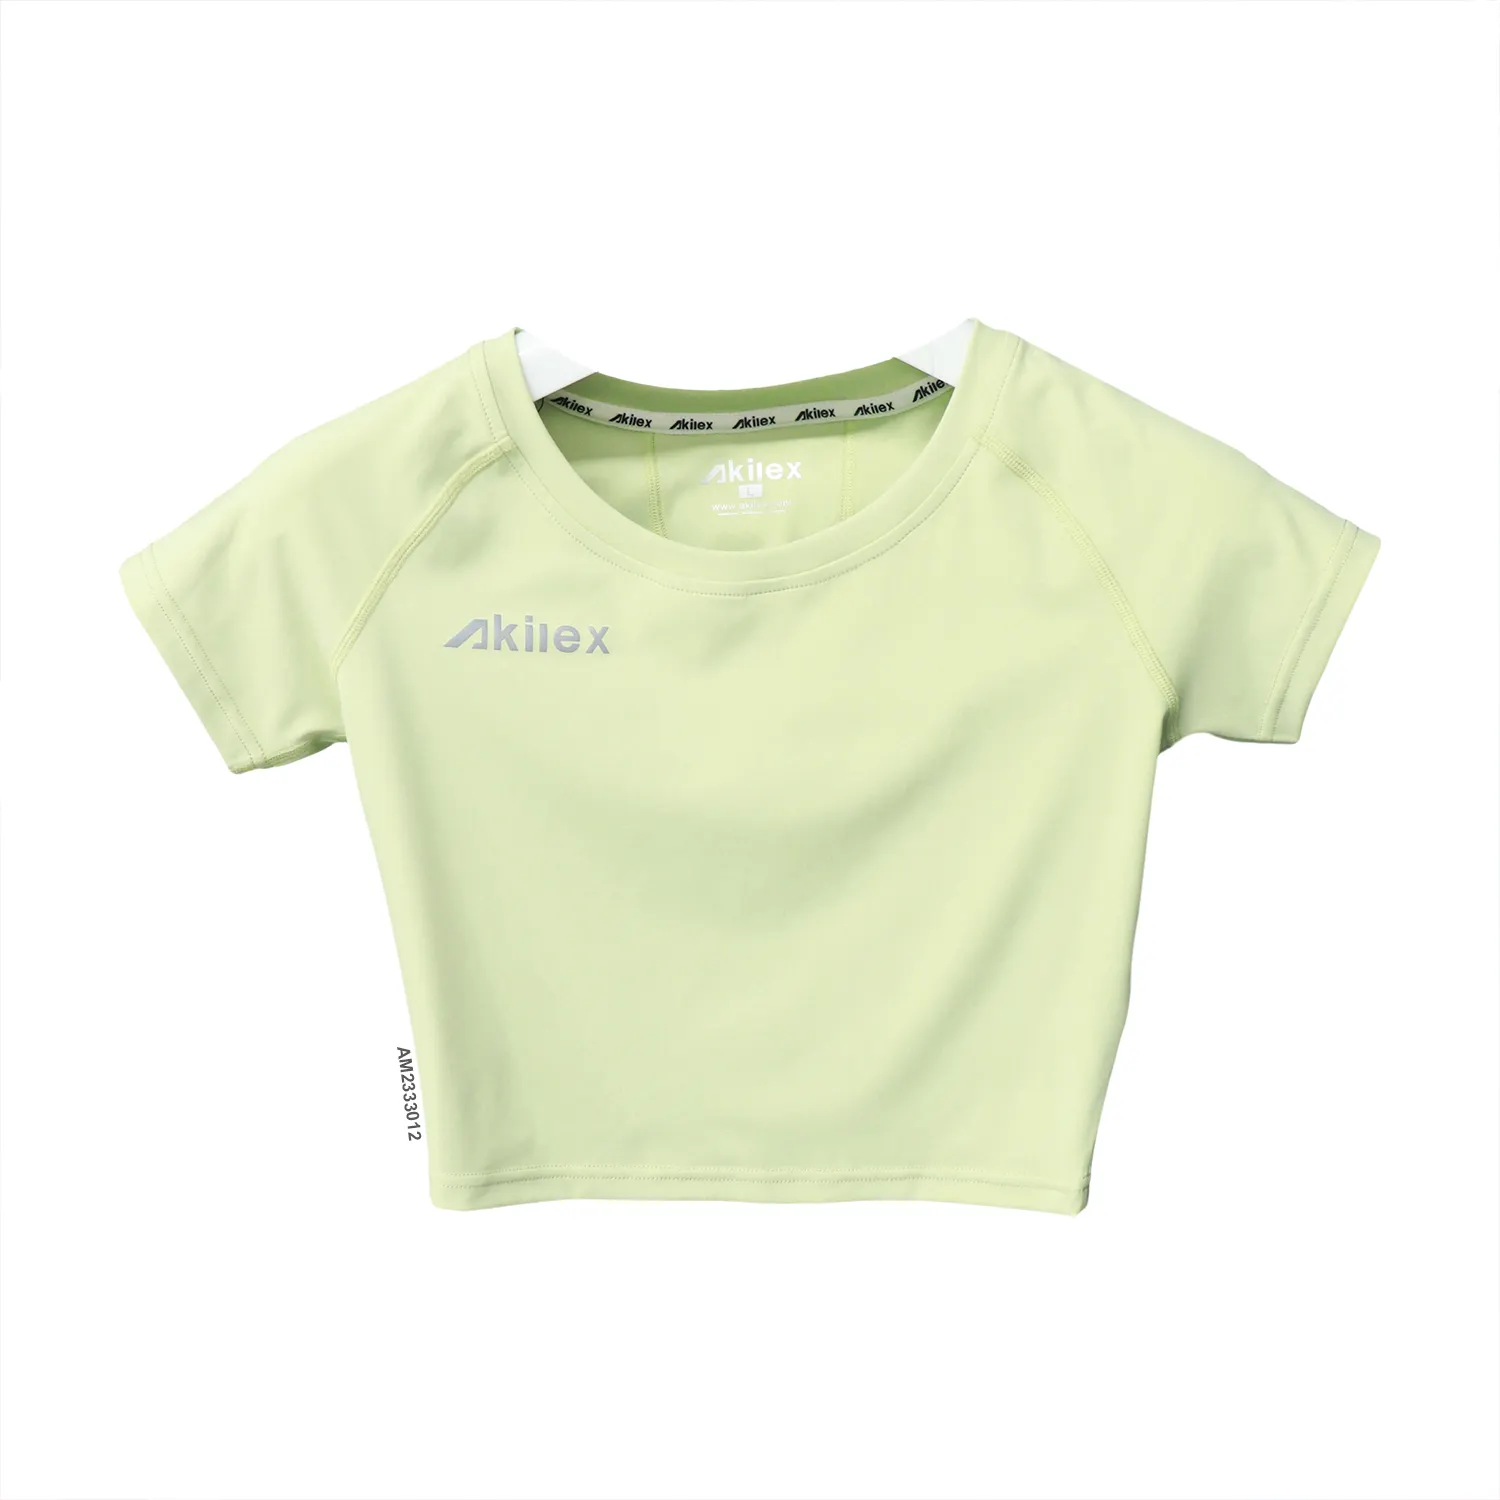 Venta al por mayor personalizado mujeres Yoga gimnasio camisa transpirable ropa de entrenamiento deportivo suave al tacto mujeres camiseta